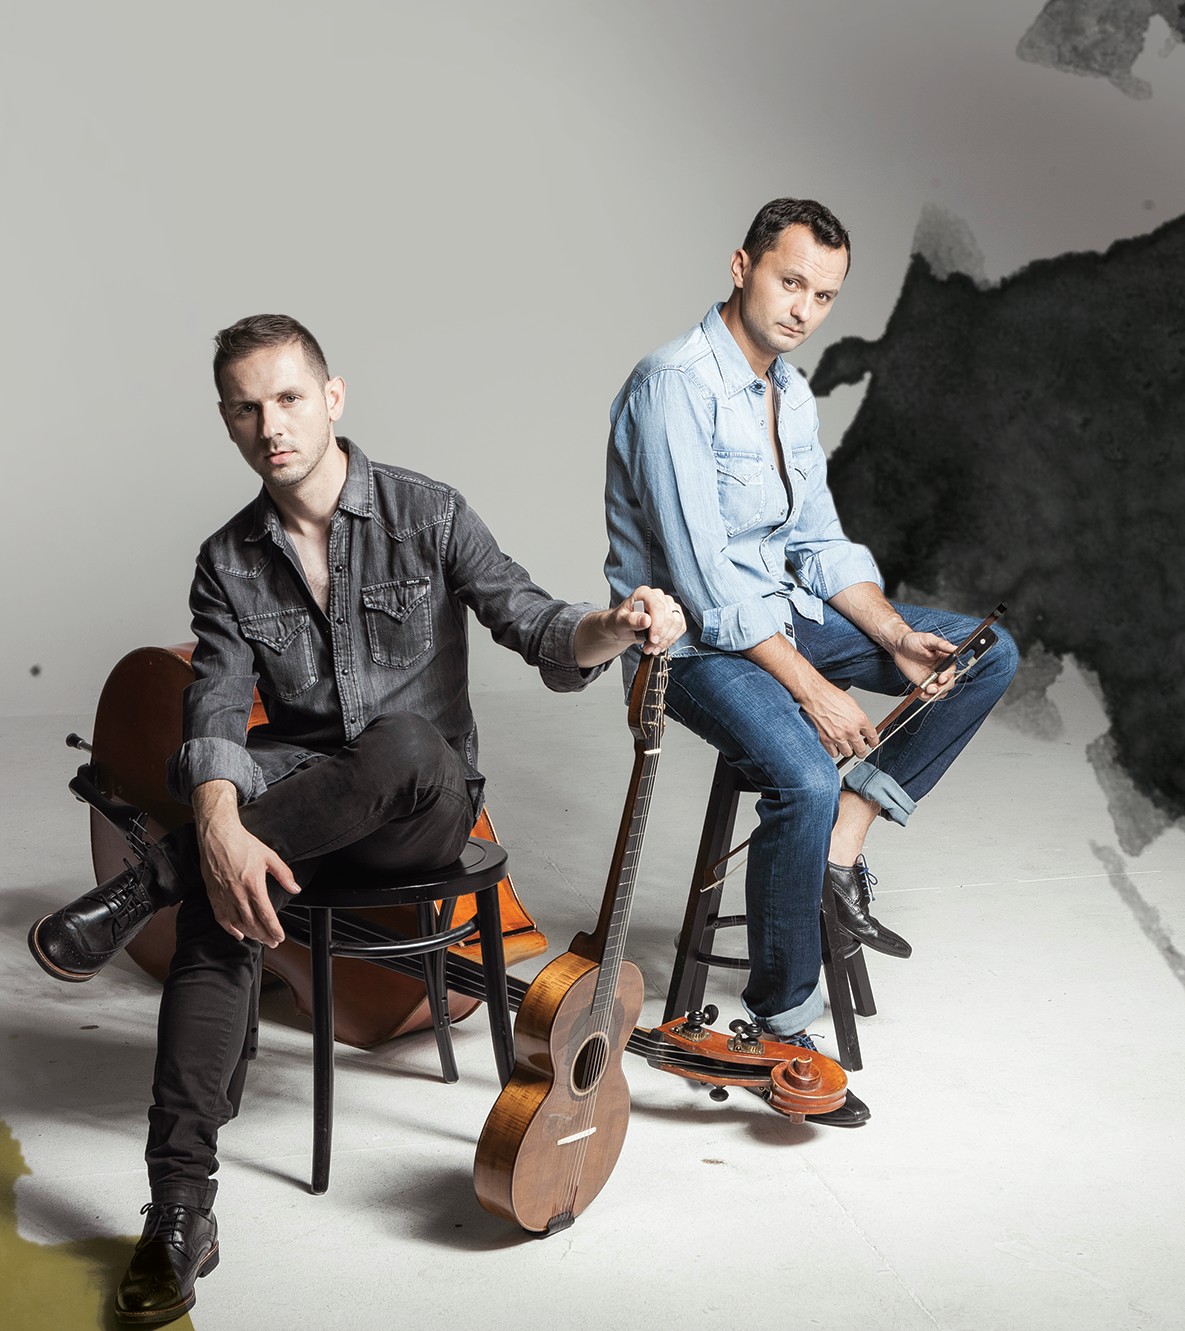 Hojsak&Novosel na albumu “Perle” predstavljaju Gibonnijeve pjesme u sasvim novom ruhu